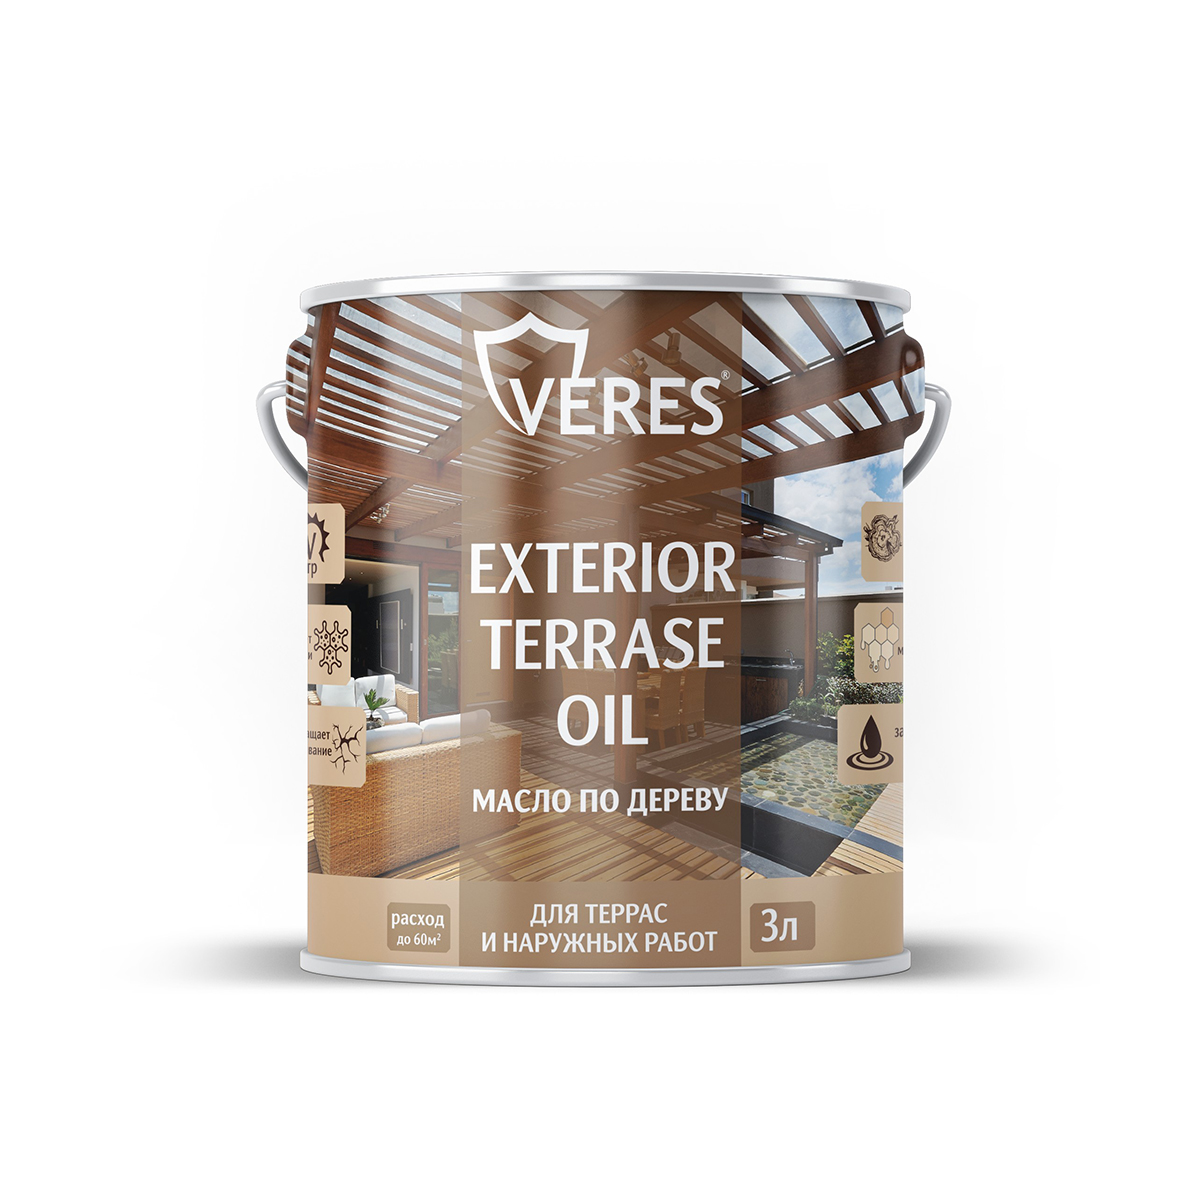 Масло для дерева Veres Exterior Terrase Oil, 3 л, палисандр - купить в ООО "Кол-Сервис", цена на Мегамаркет